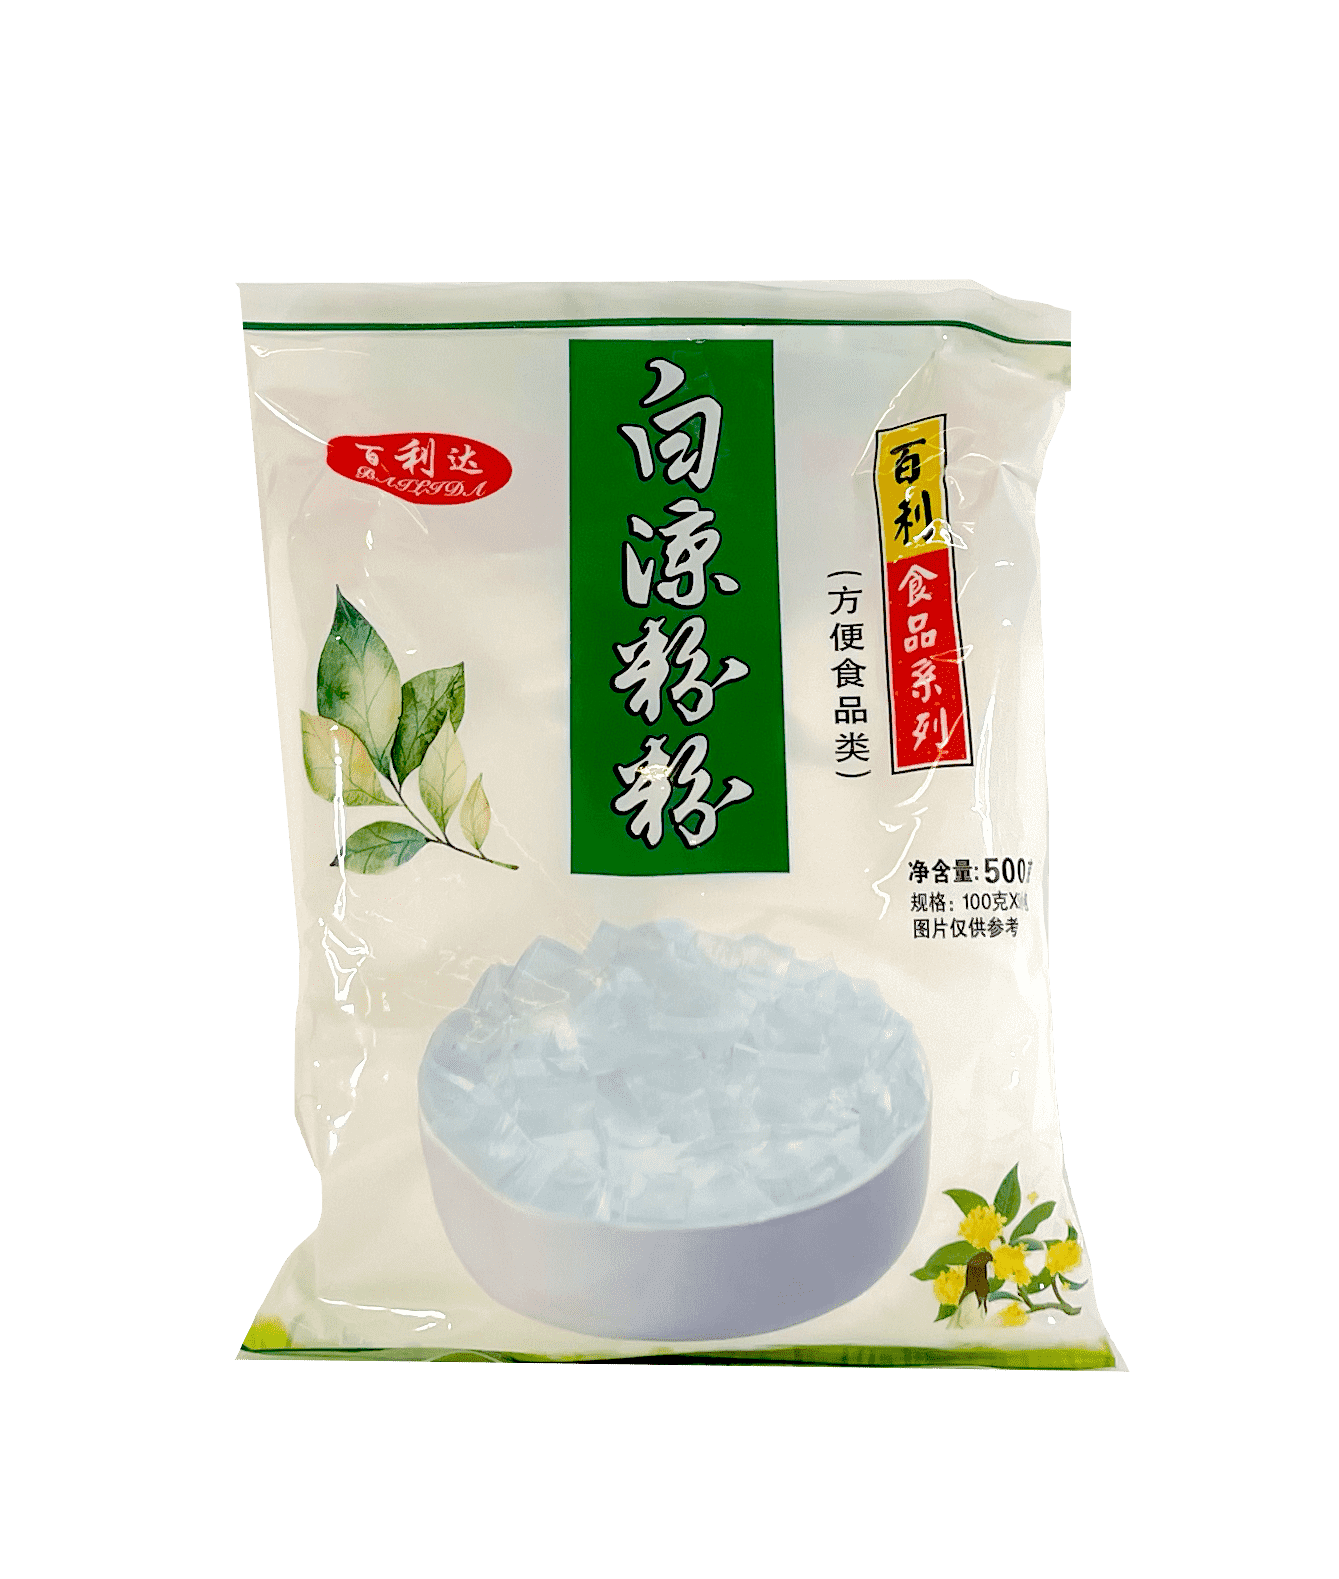 Best Before:2022.10.01 Jelly Powder White 500g Bailida China